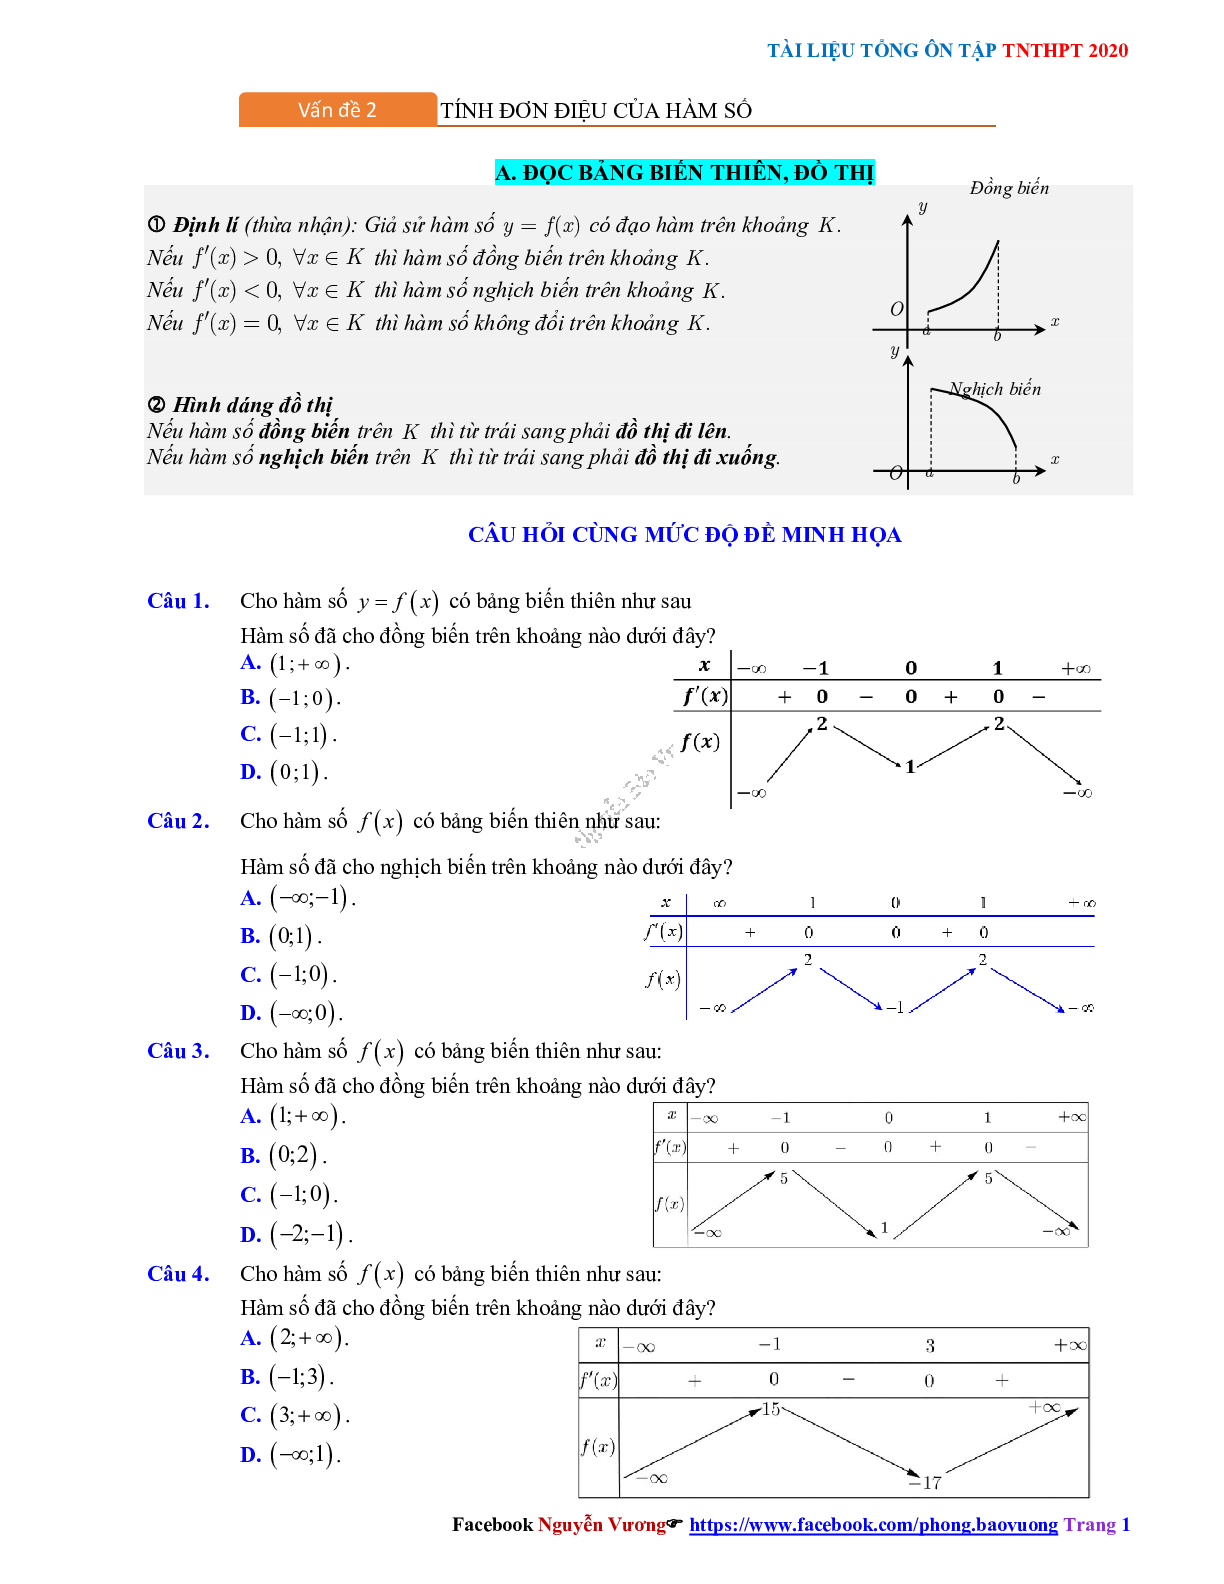 Phương pháp giải Tính đơn điệu của hàm số 2023 (lý thuyết và bài tập) (trang 1)